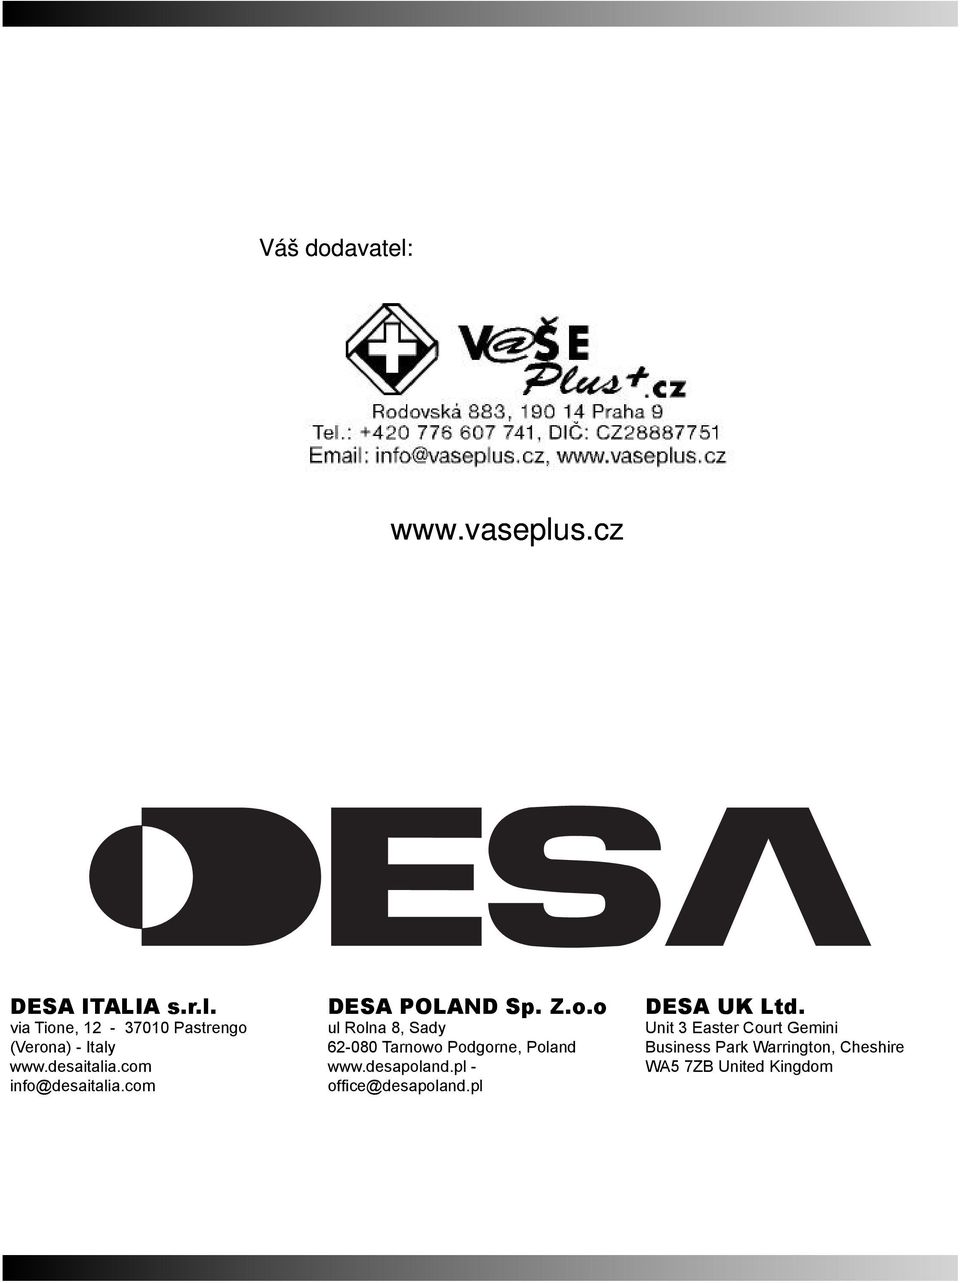 desapoland.pl - offi ce@desapoland.pl DESA UK Ltd.